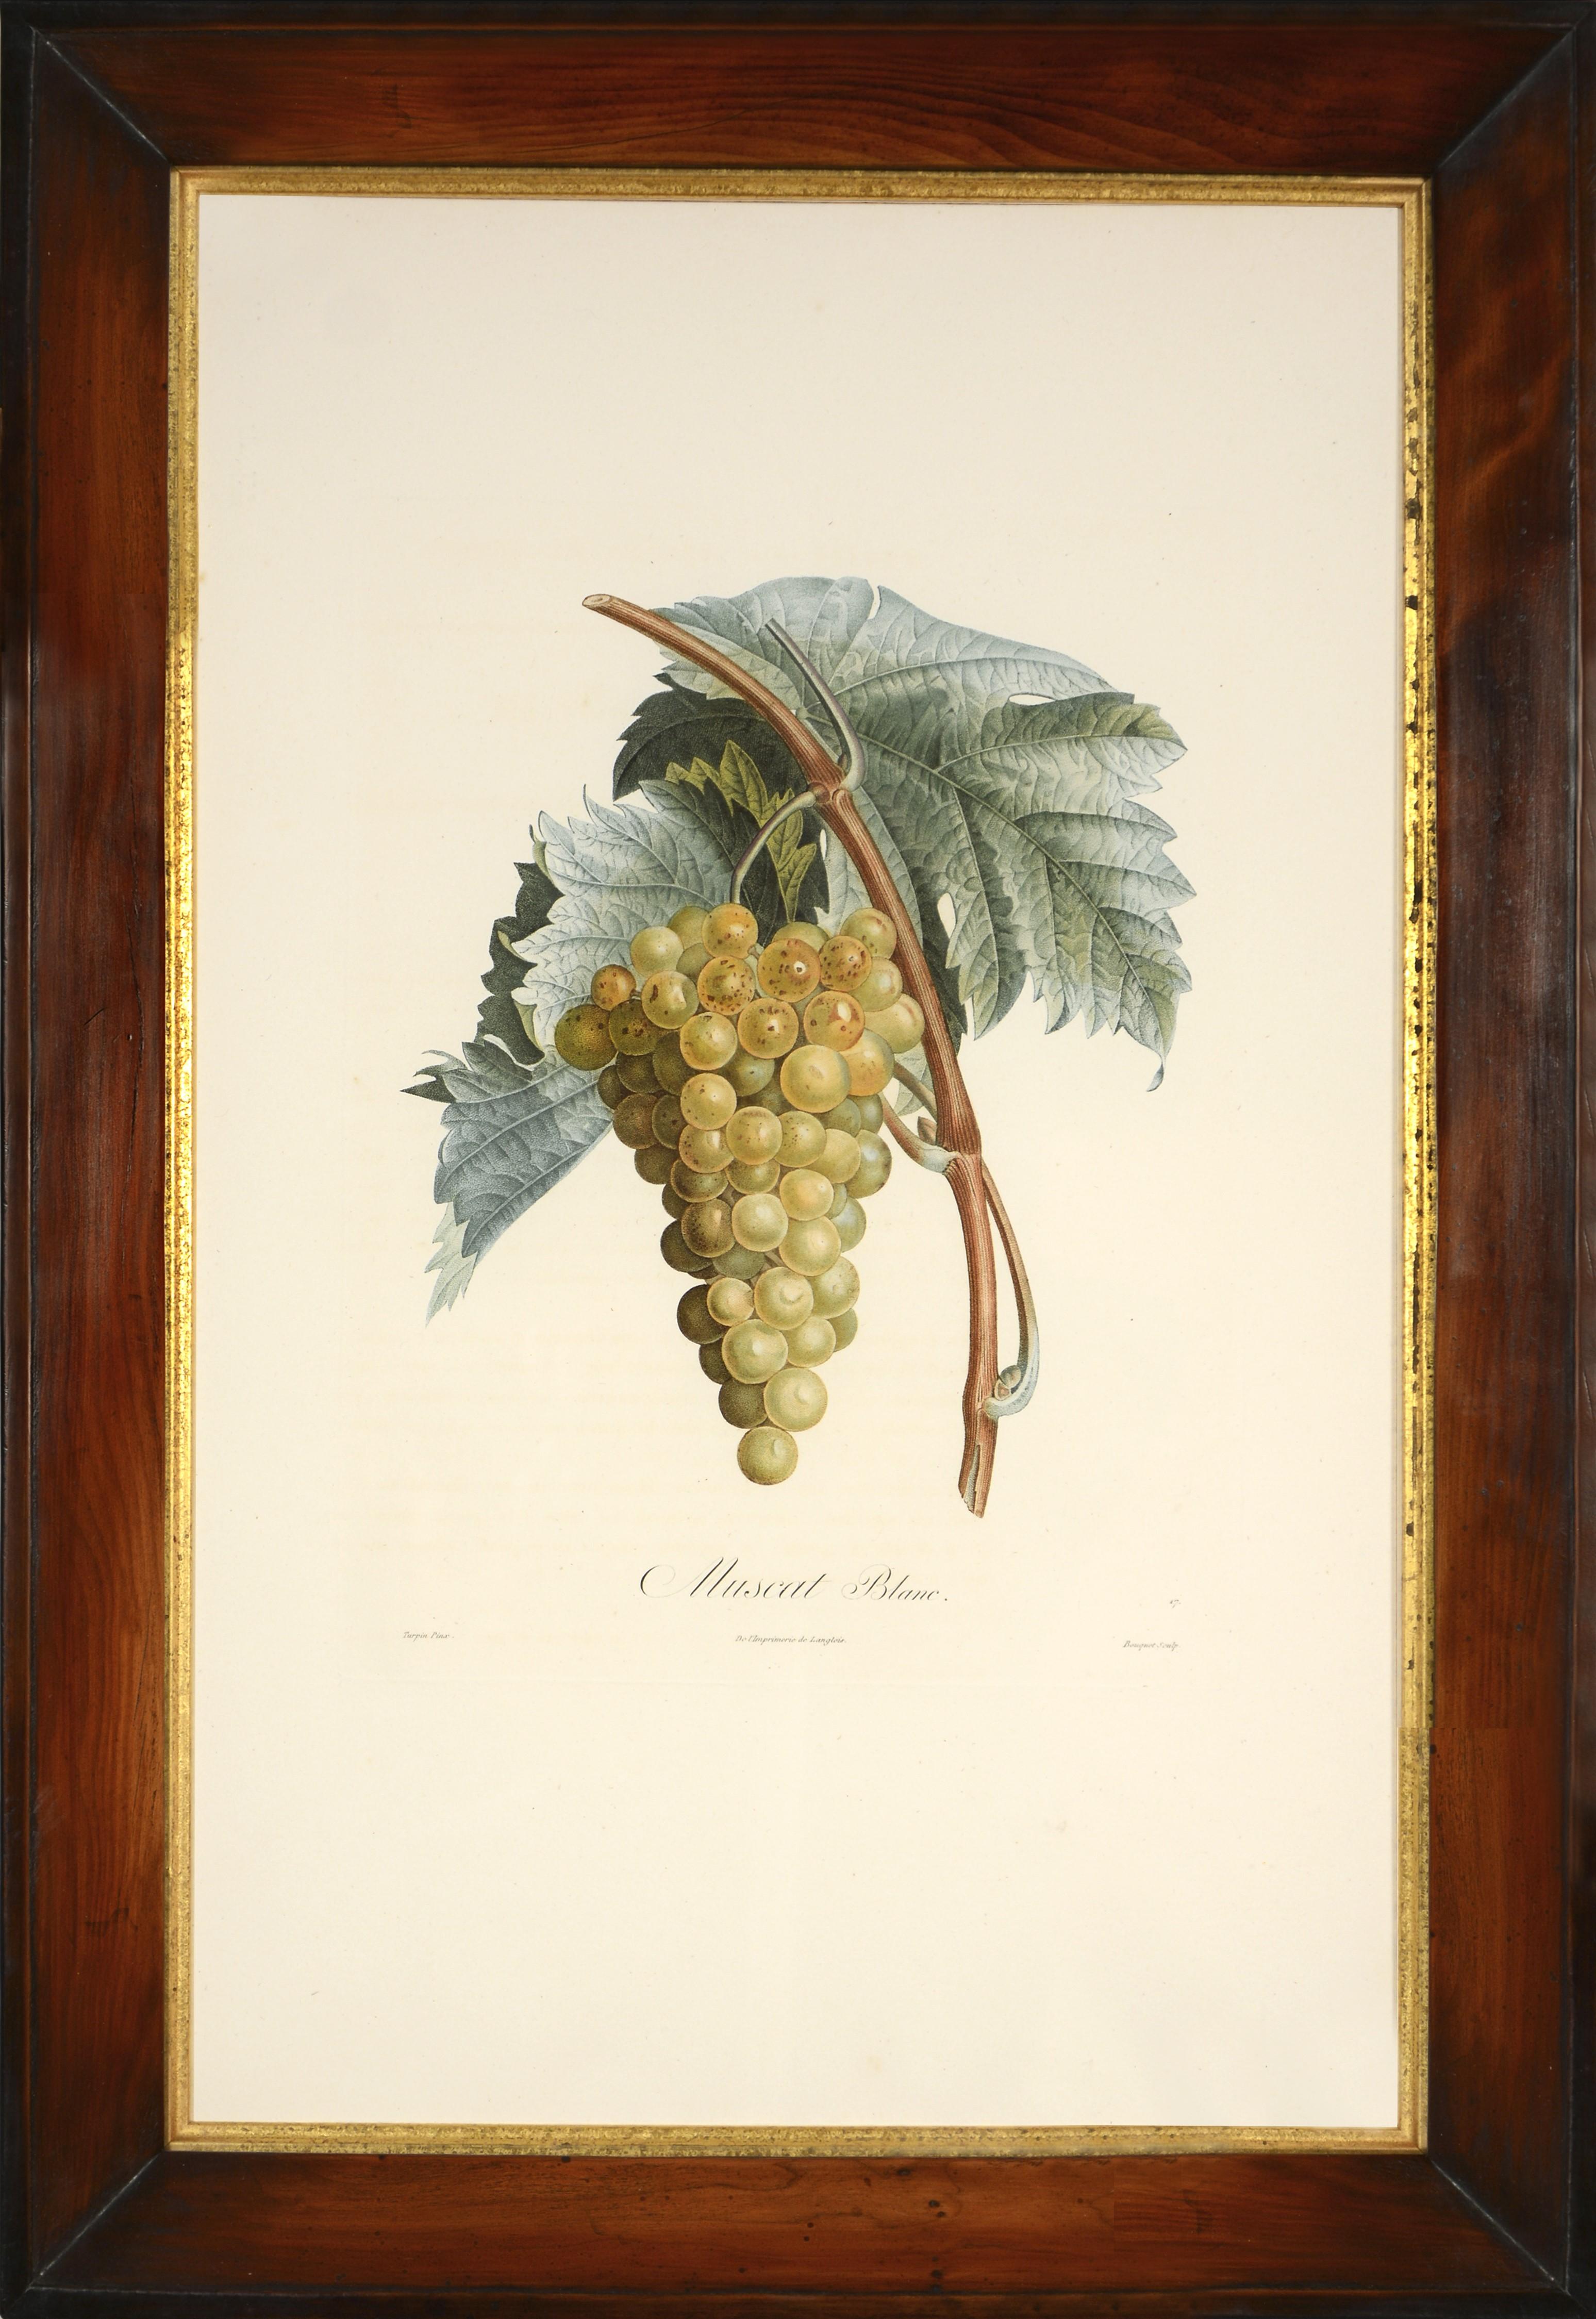 POITEAU/TURPIN. Traité des arbres fruitiers: A Set of Four Grapes. - Print by Poiteau, A & Turpin, P